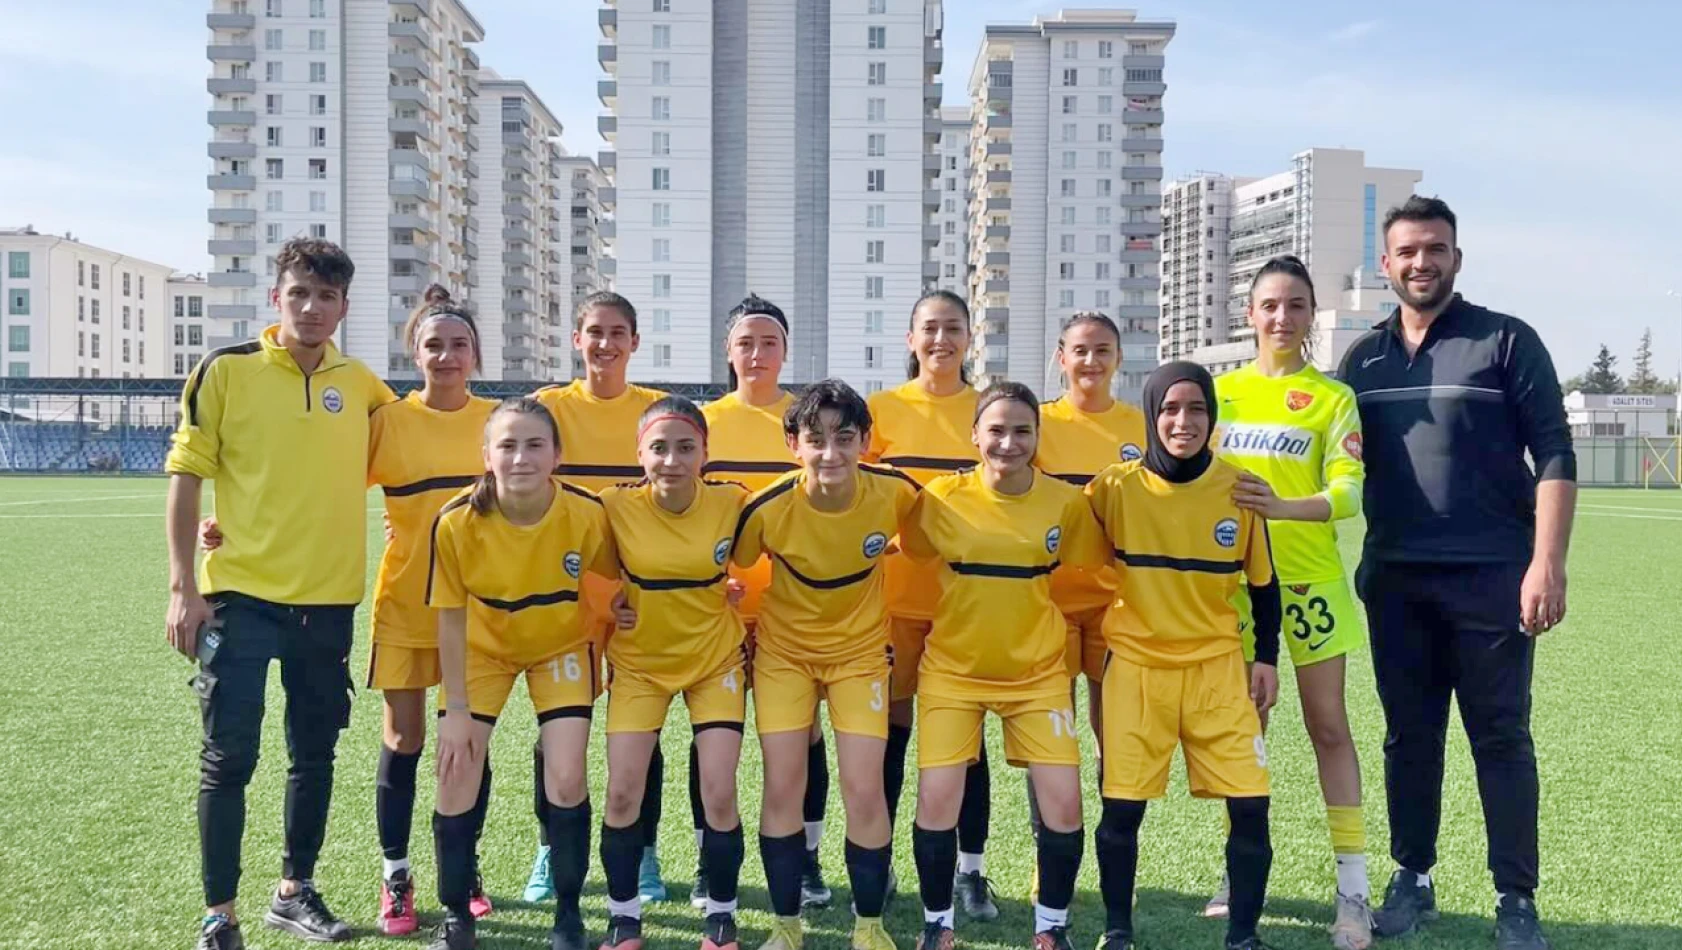 Kayseri Kadın Futbol Takımı 2. Lig'e yükseldi! - Kayseri Futbol Haberleri